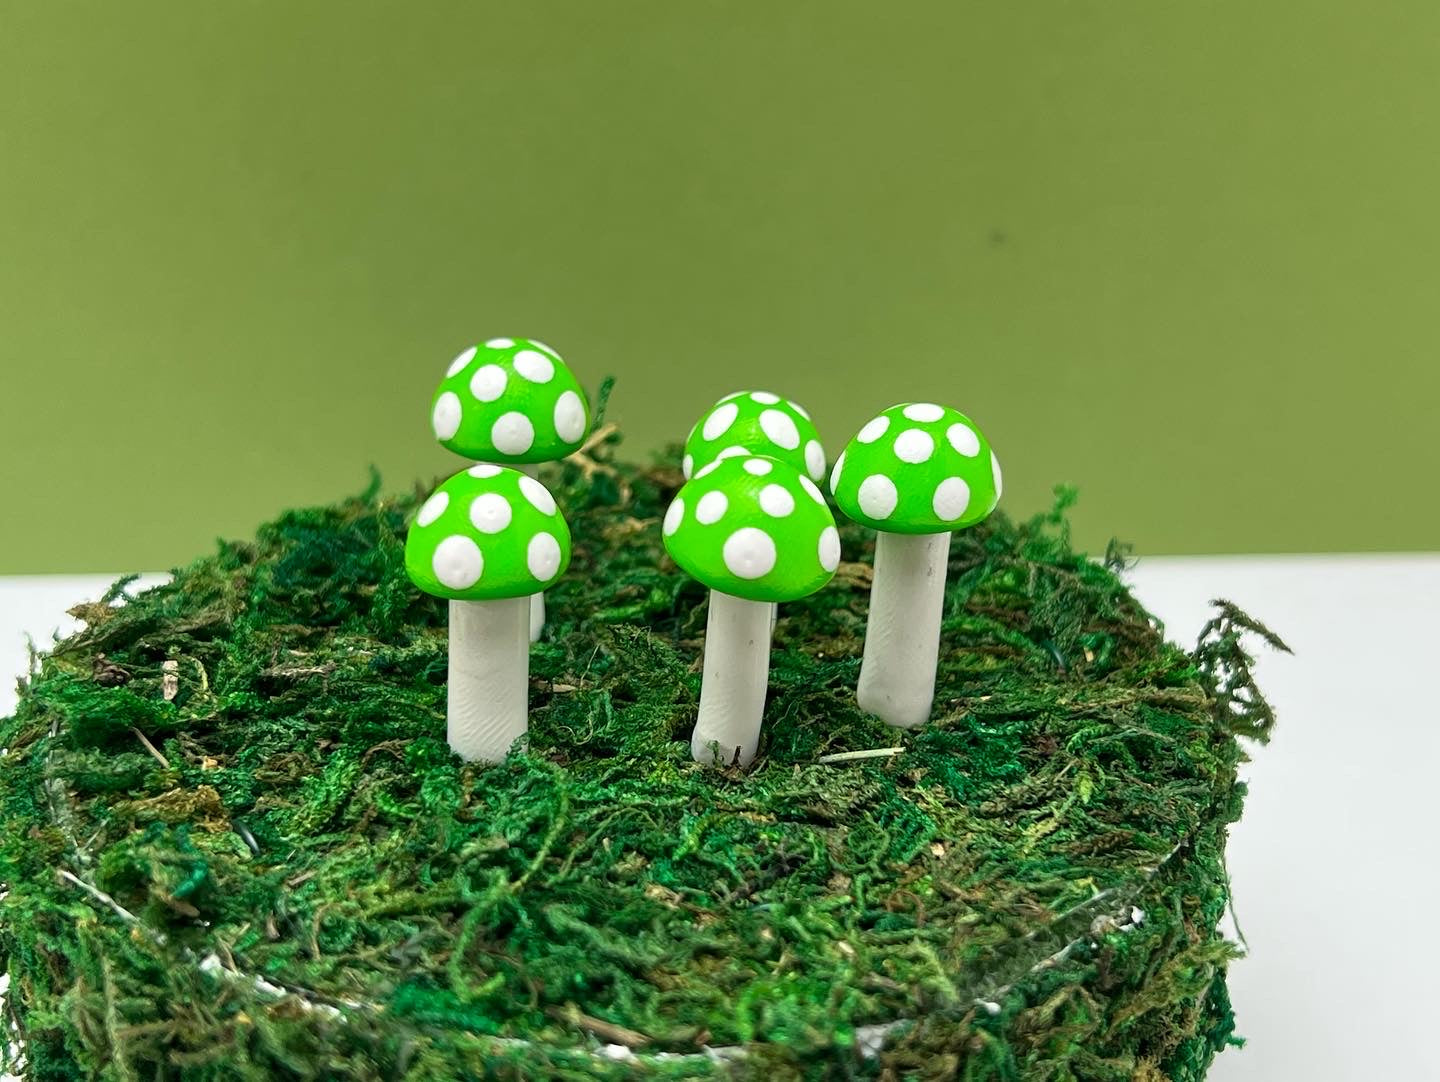 Ball Mushroom Picks - Bright Green